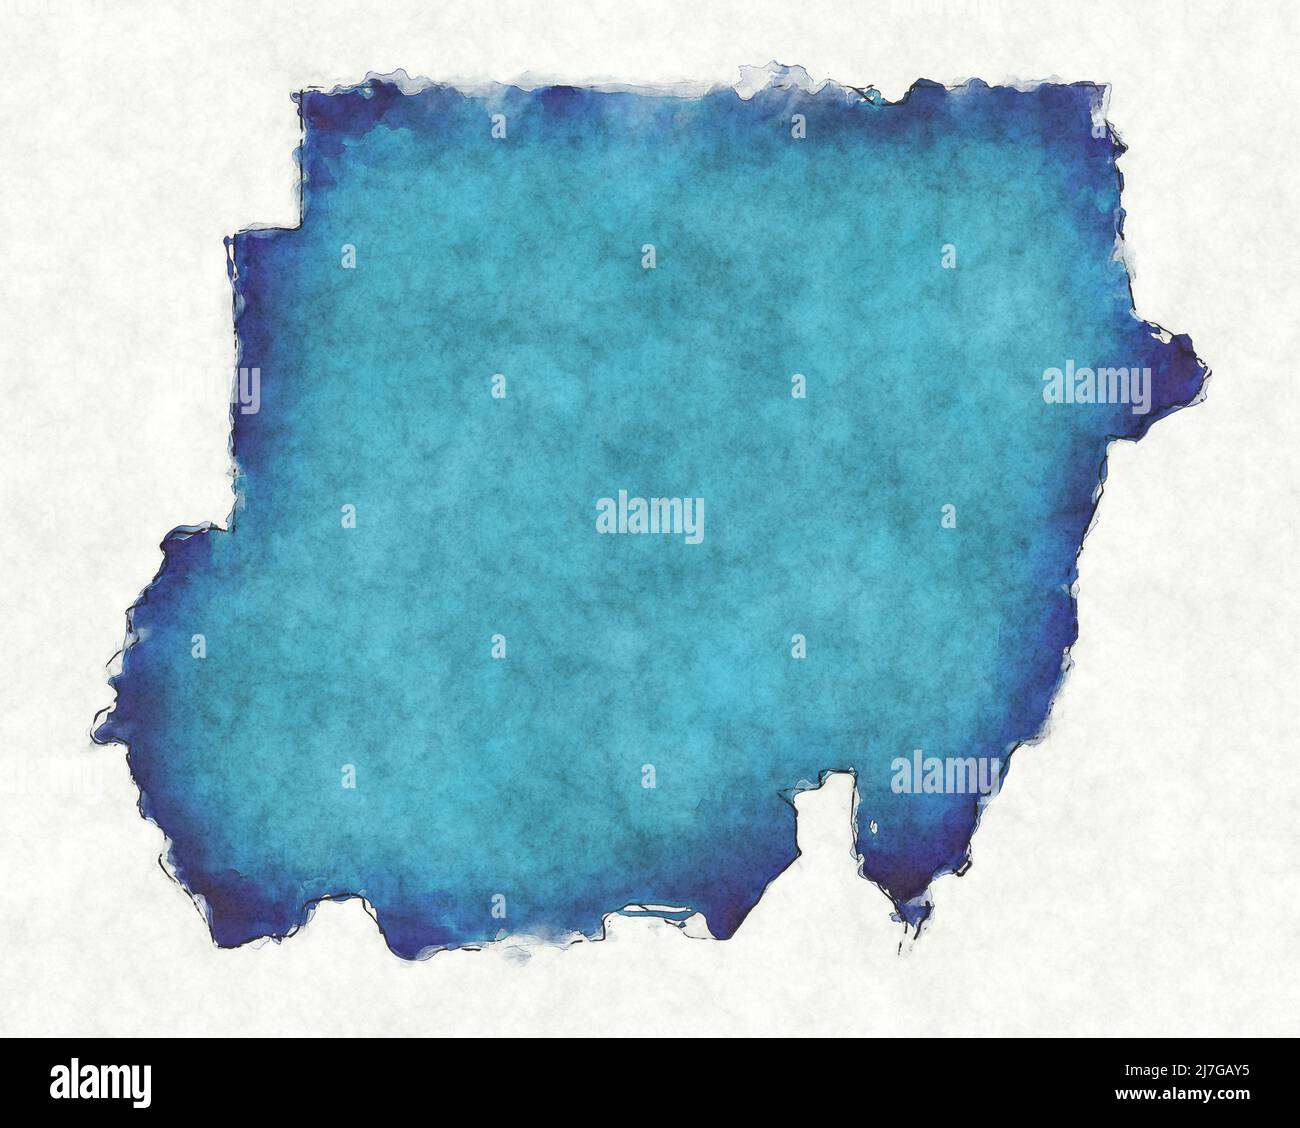 Mapa de Sudán con líneas trazadas e ilustración de acuarela azul Foto de stock